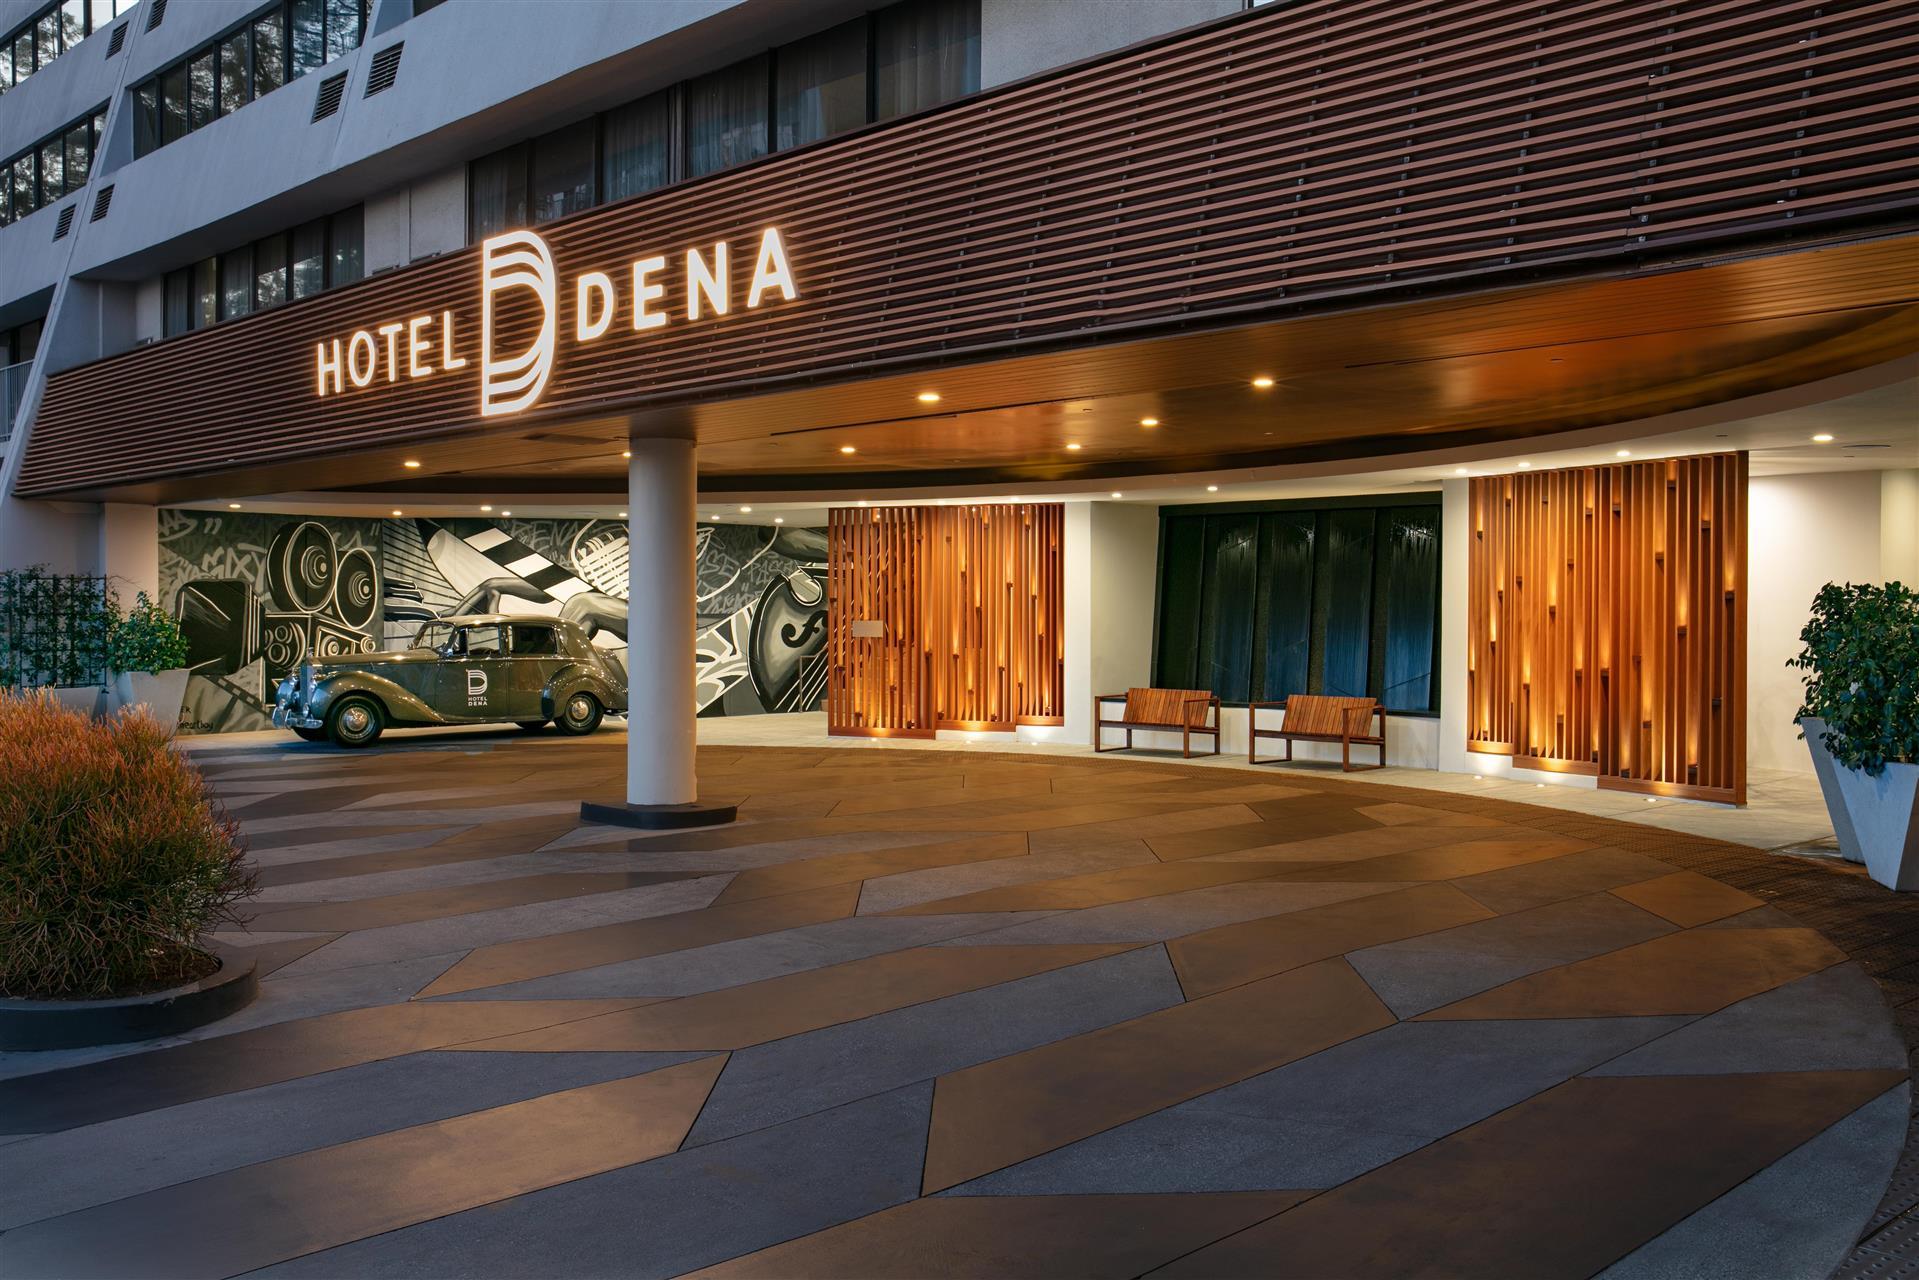 Hotel Dena, Pasadena Los Angeles, a Tribute Portfolio Hotel in Pasadena, CA